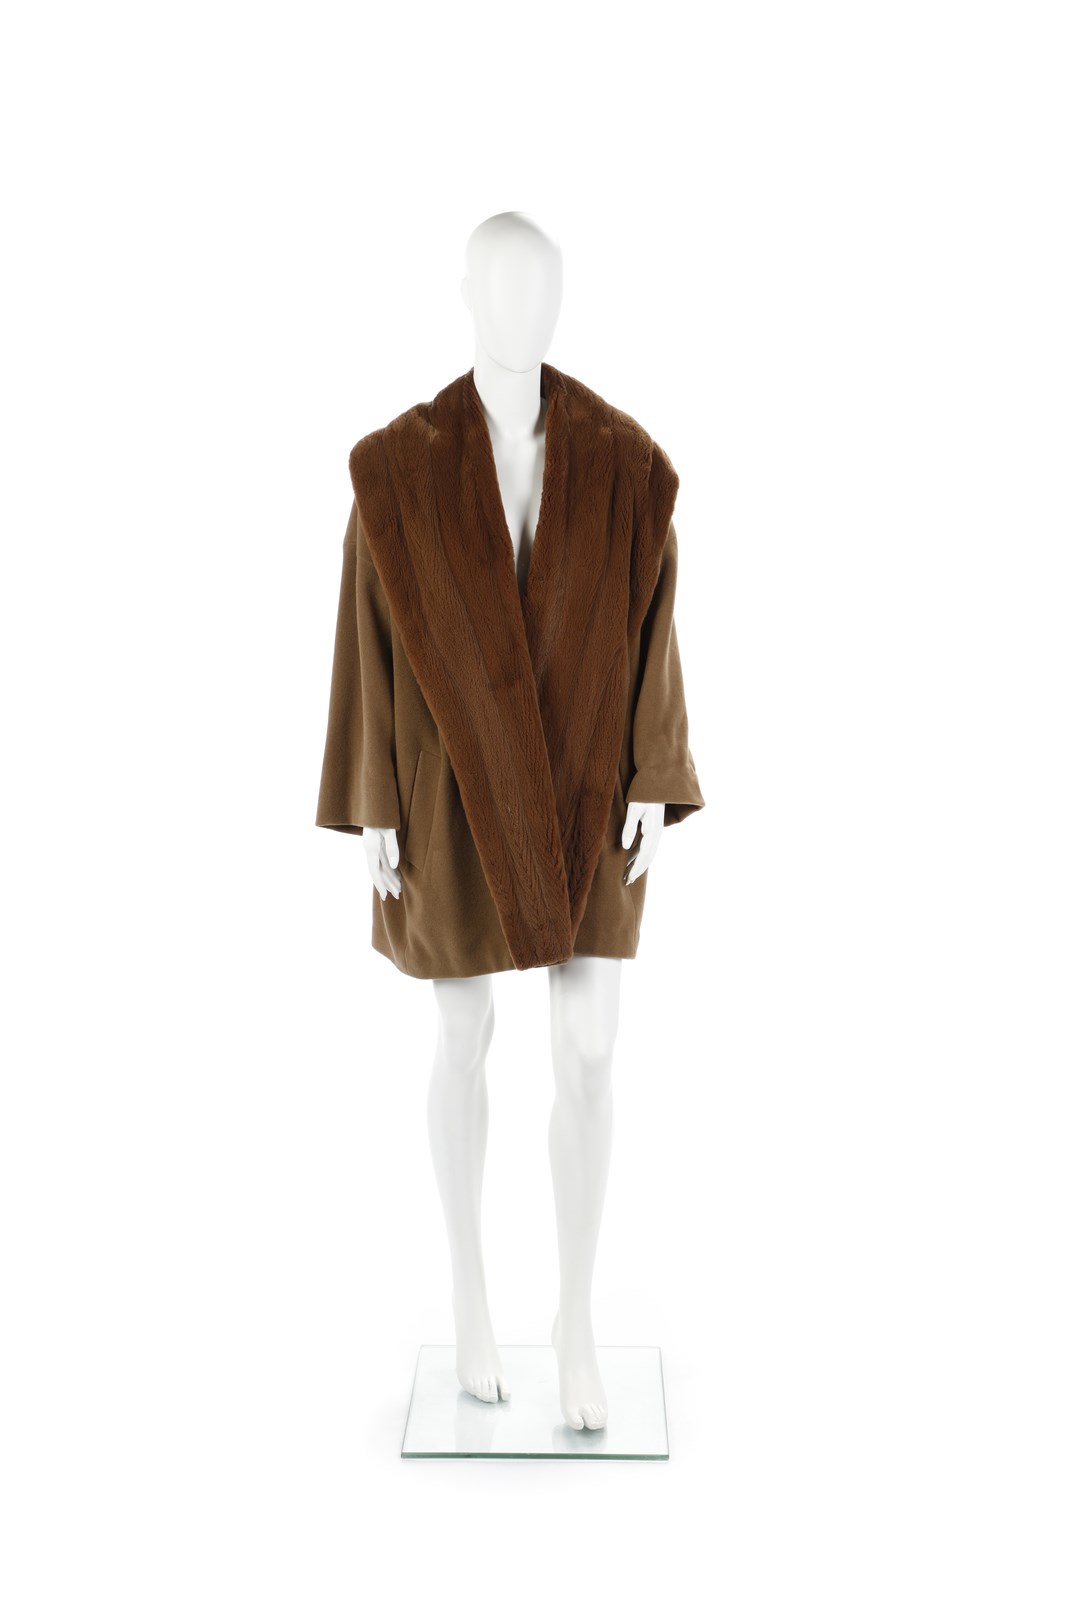 Cappotto in lana e cachemire color cammello e collo in pelliccia. (Jil Sander )